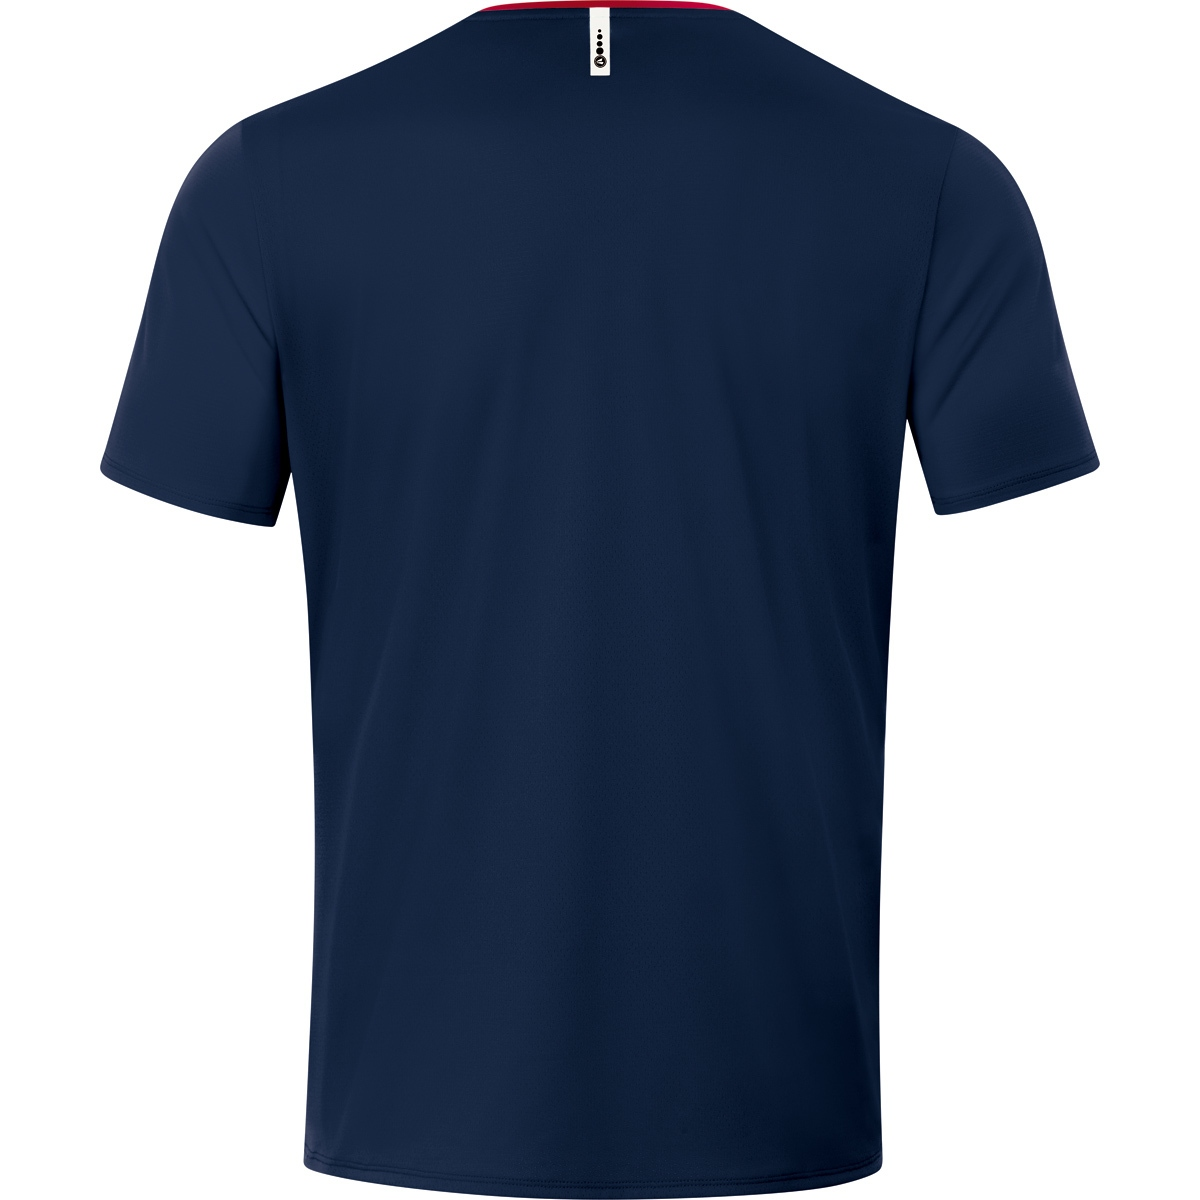 Champ rot, 2.0 JAKO Gr. 6120 T-Shirt Herren, L, marine/chili